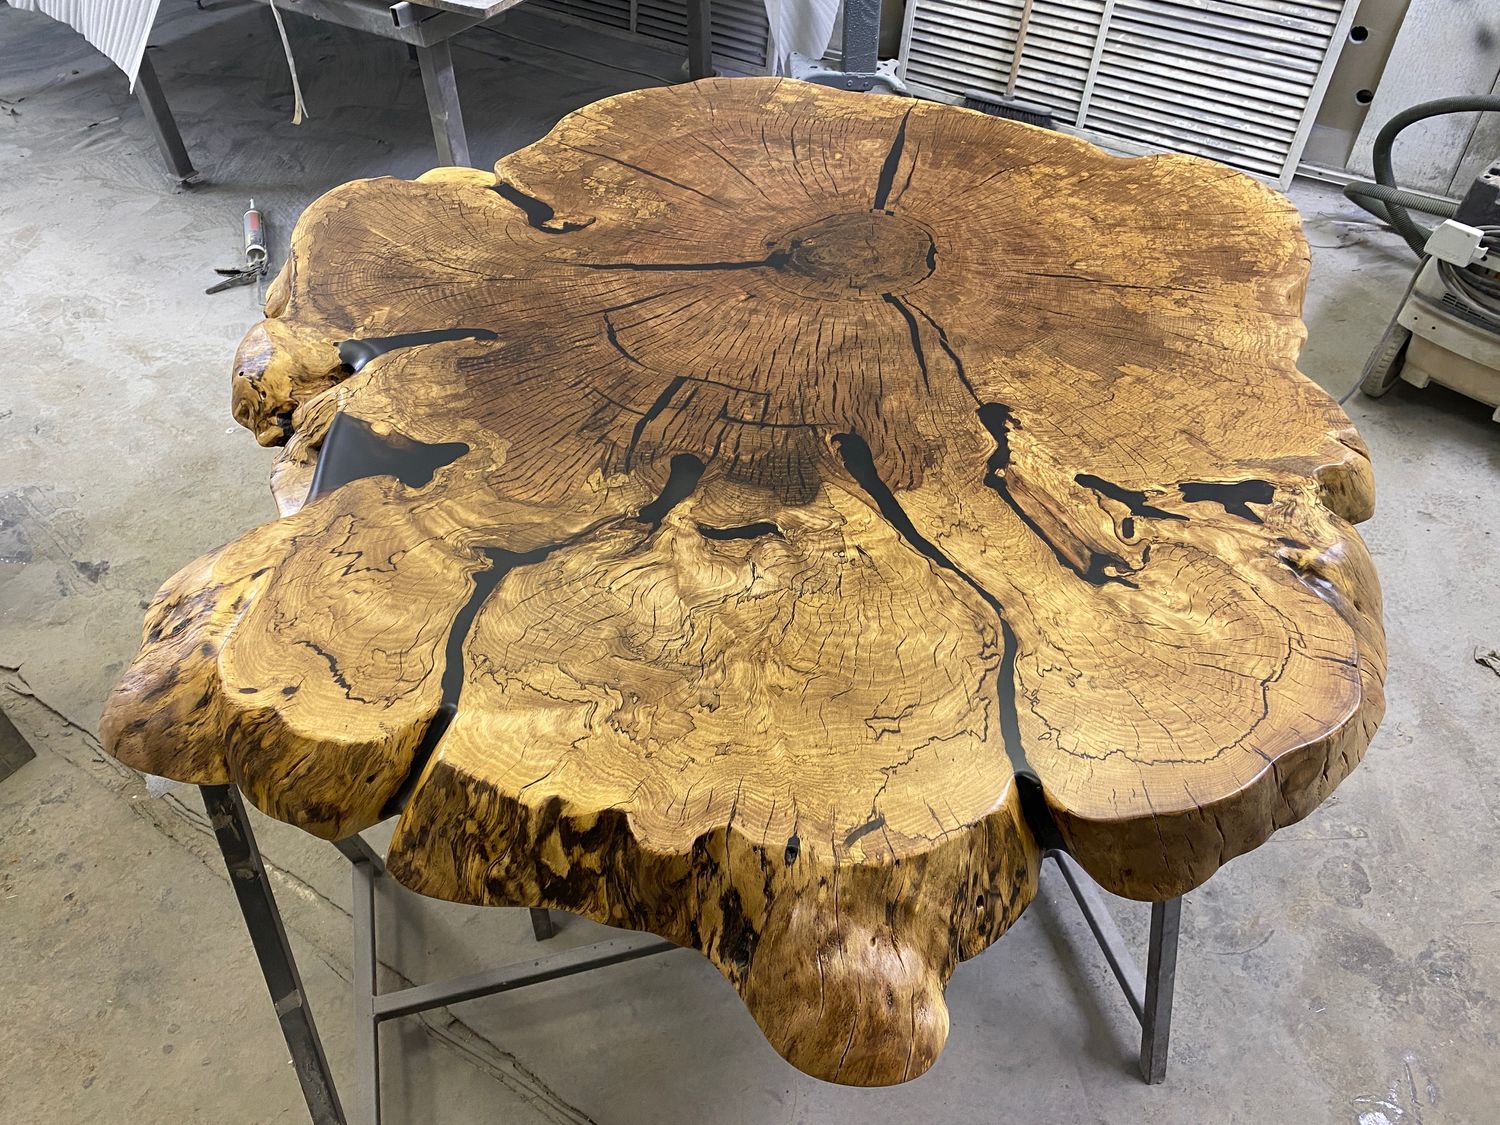 стол из дерева финский